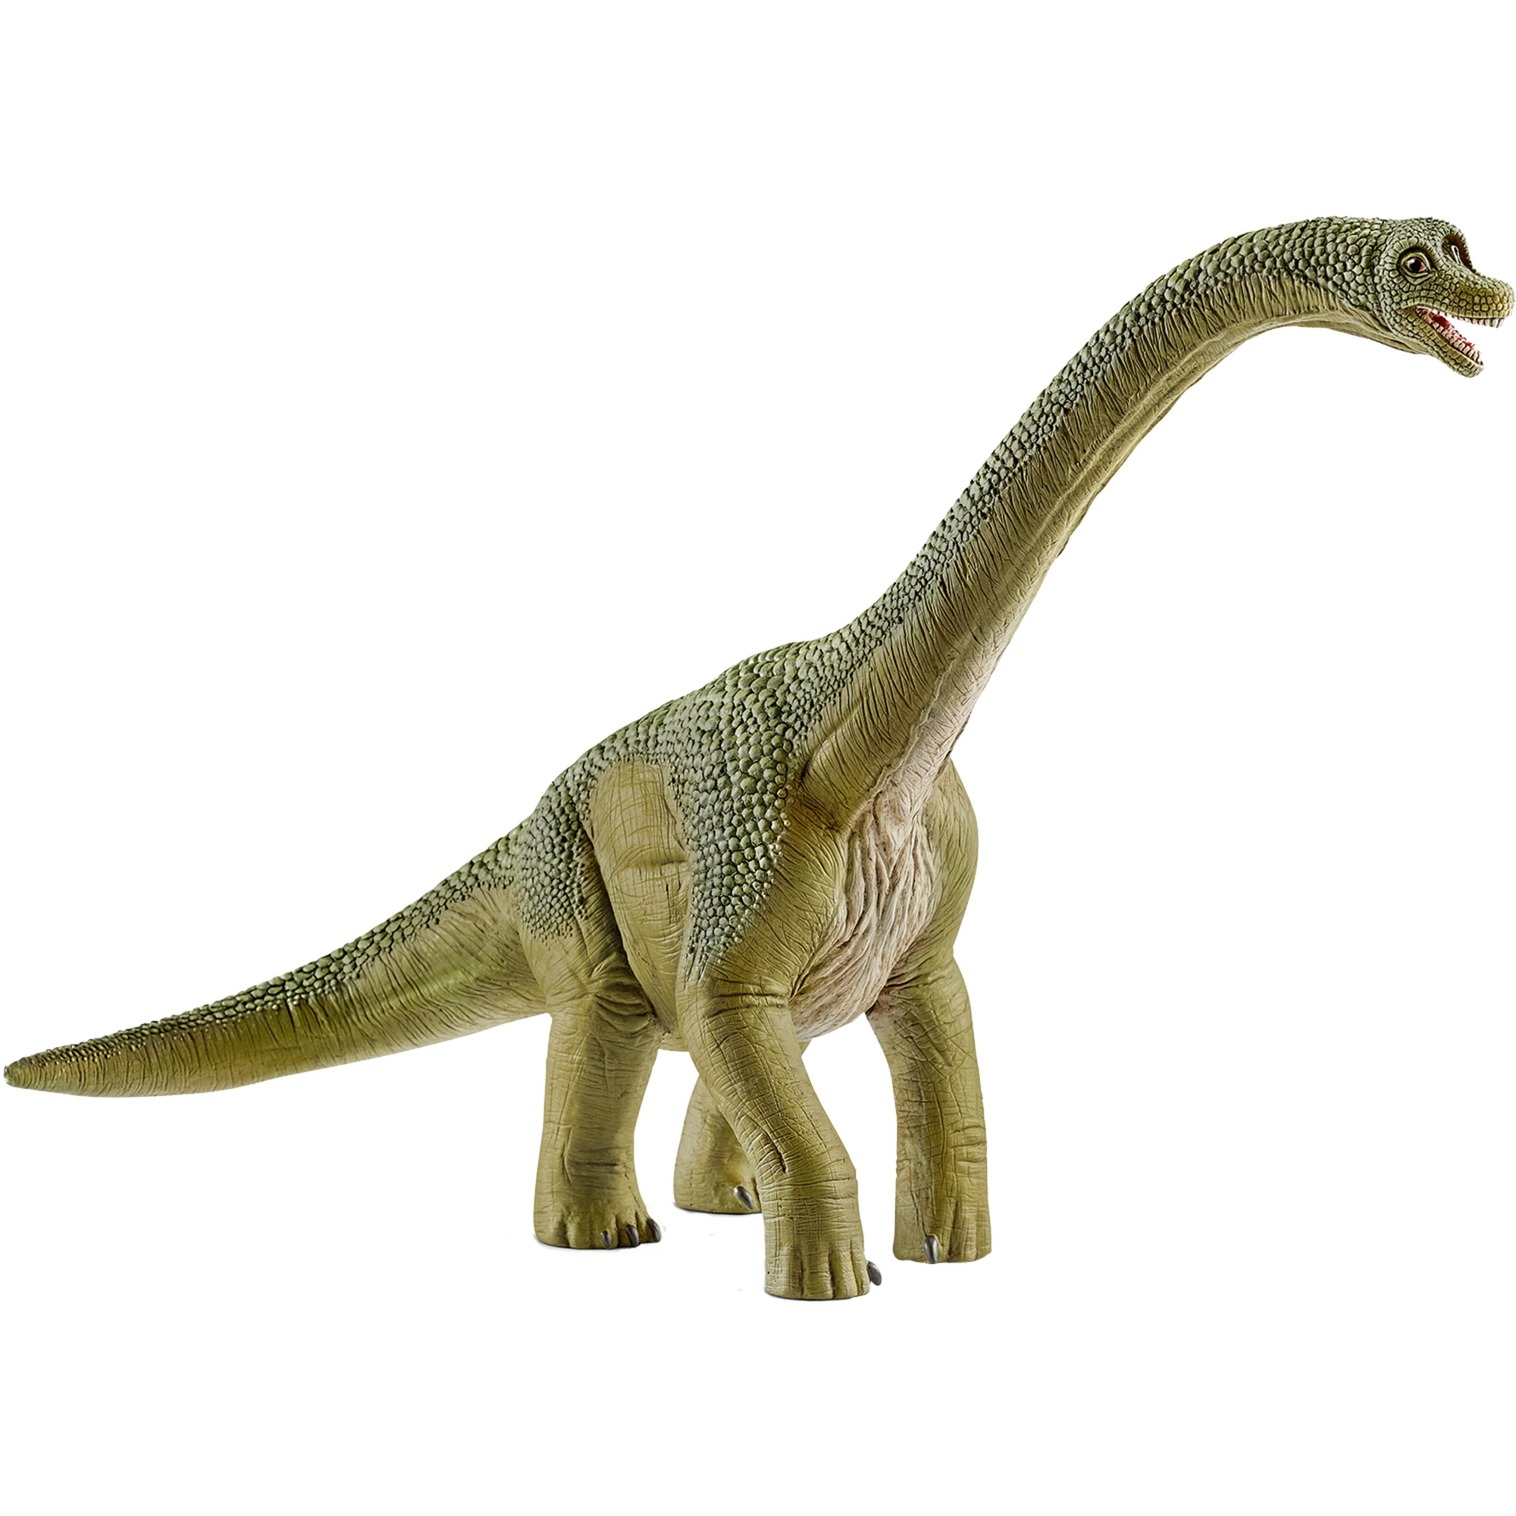 Image of Alternate - Brachiosaurus, Spielfigur online einkaufen bei Alternate